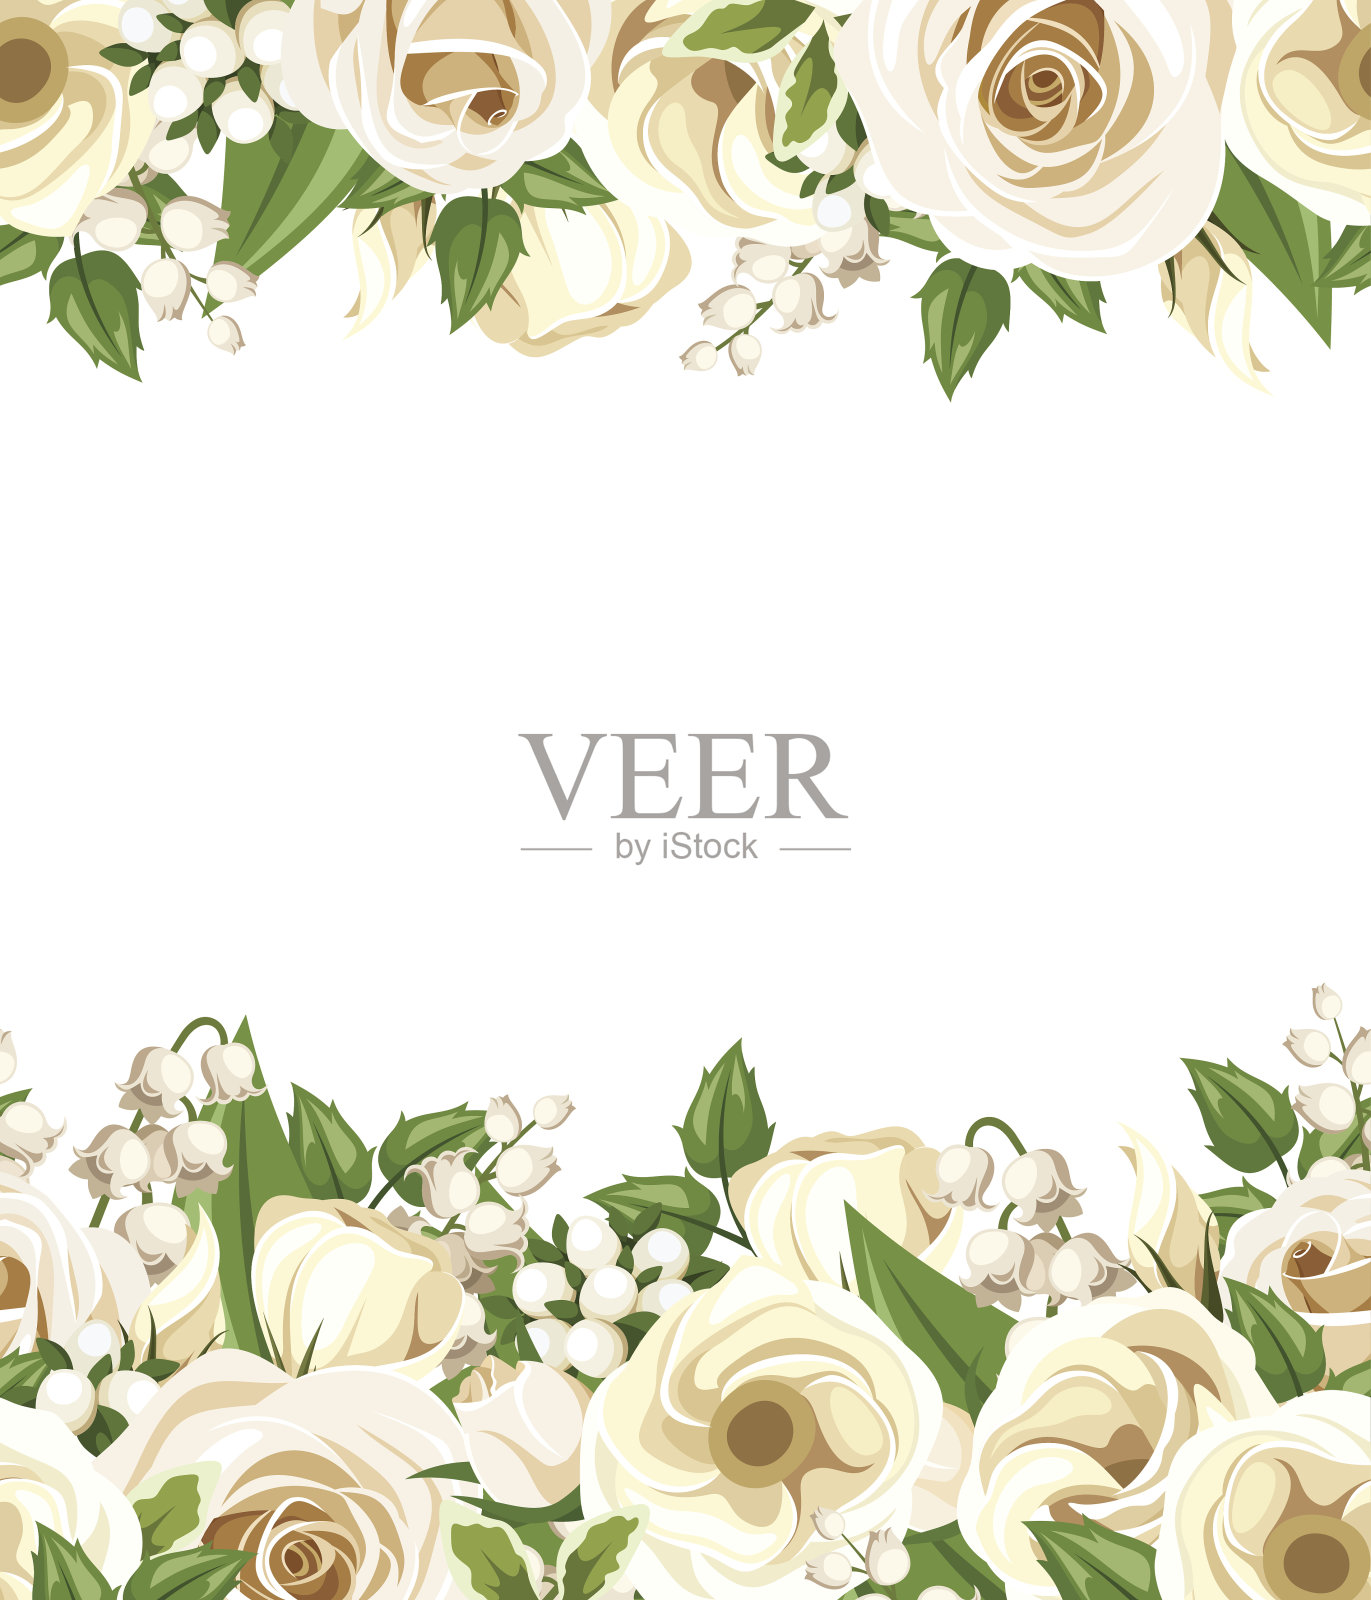 水平无缝背景与白玫瑰，洋桔梗和丁香花。插画图片素材